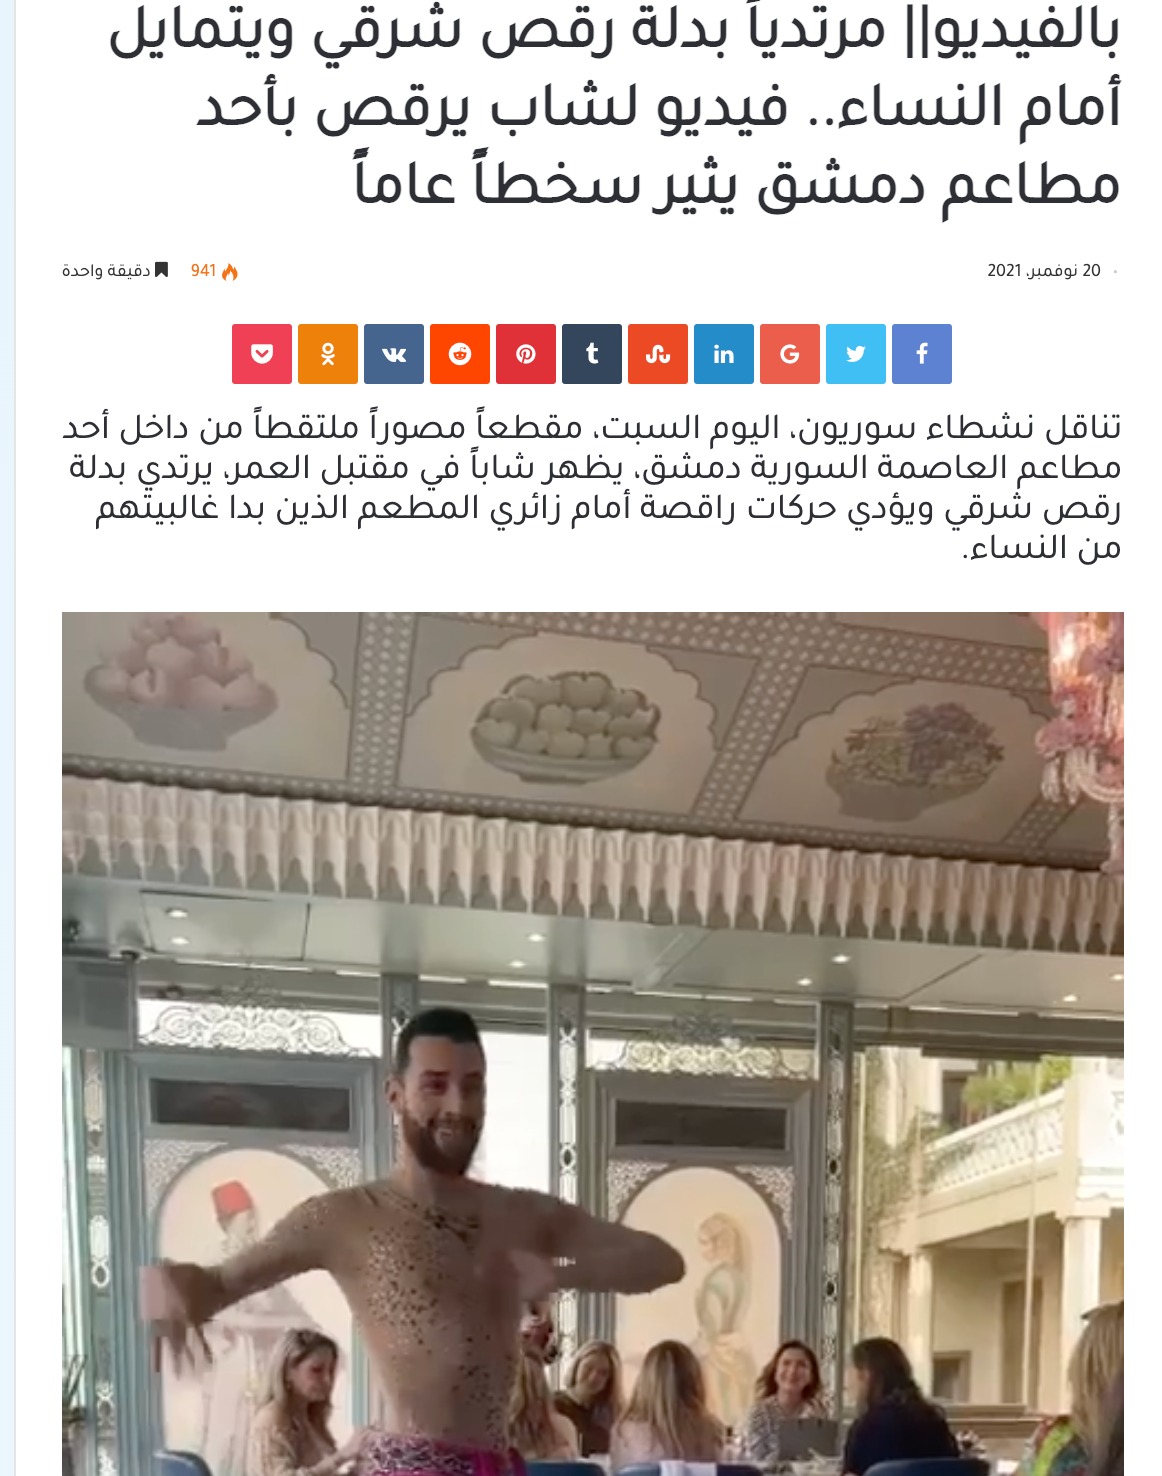 شاب يؤدي رقص شرقي في فندق فورسيزون بالعاصمة دمشق